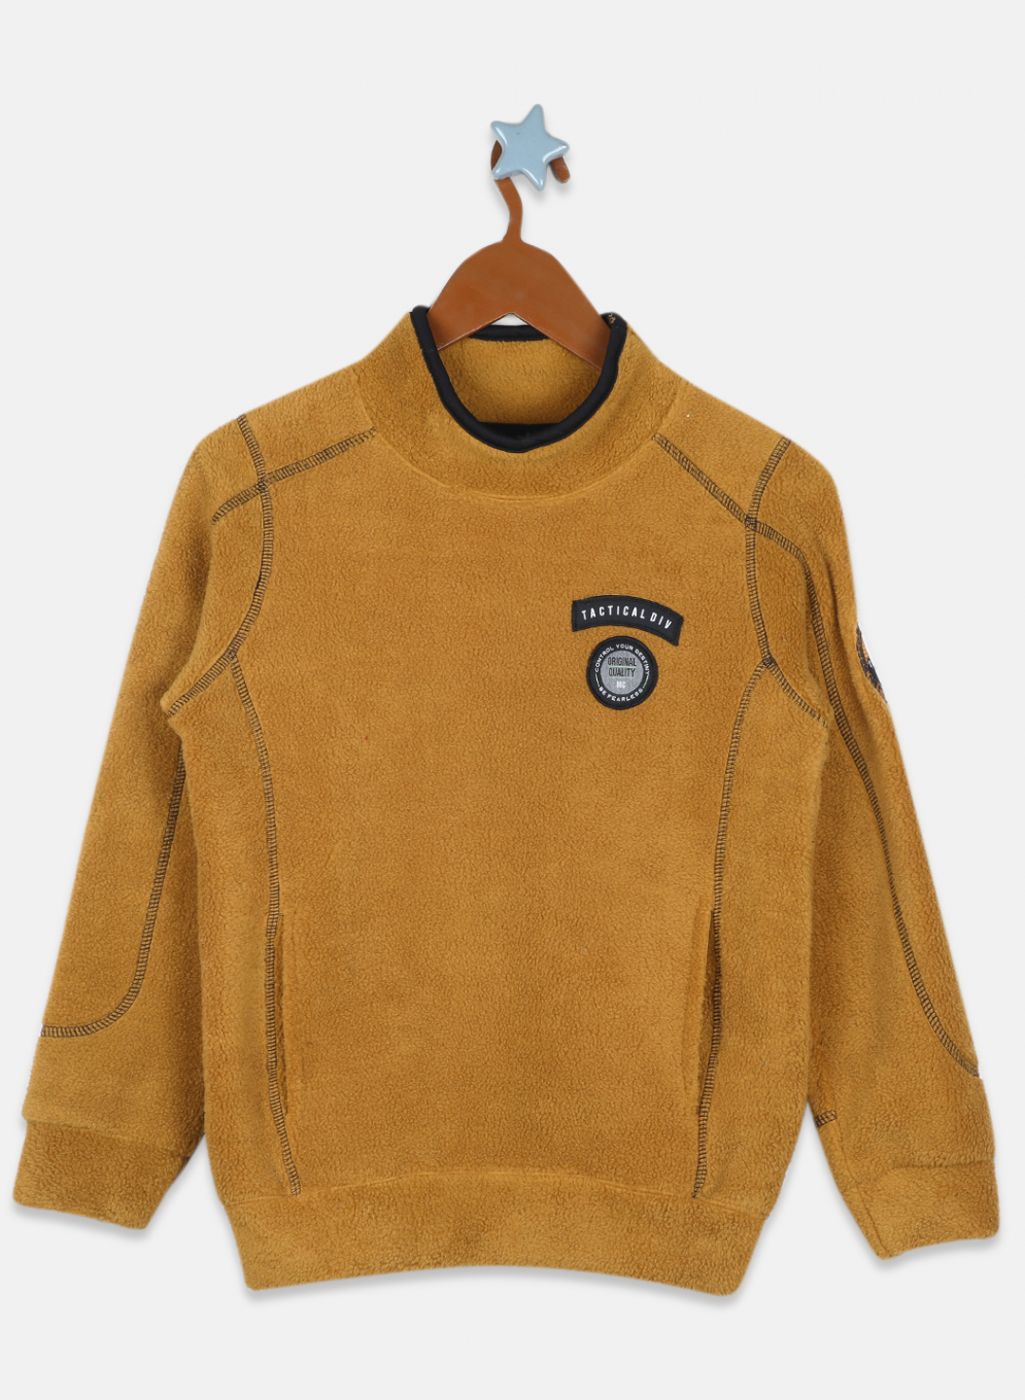 Boys Khaki Printed Sweatshirt